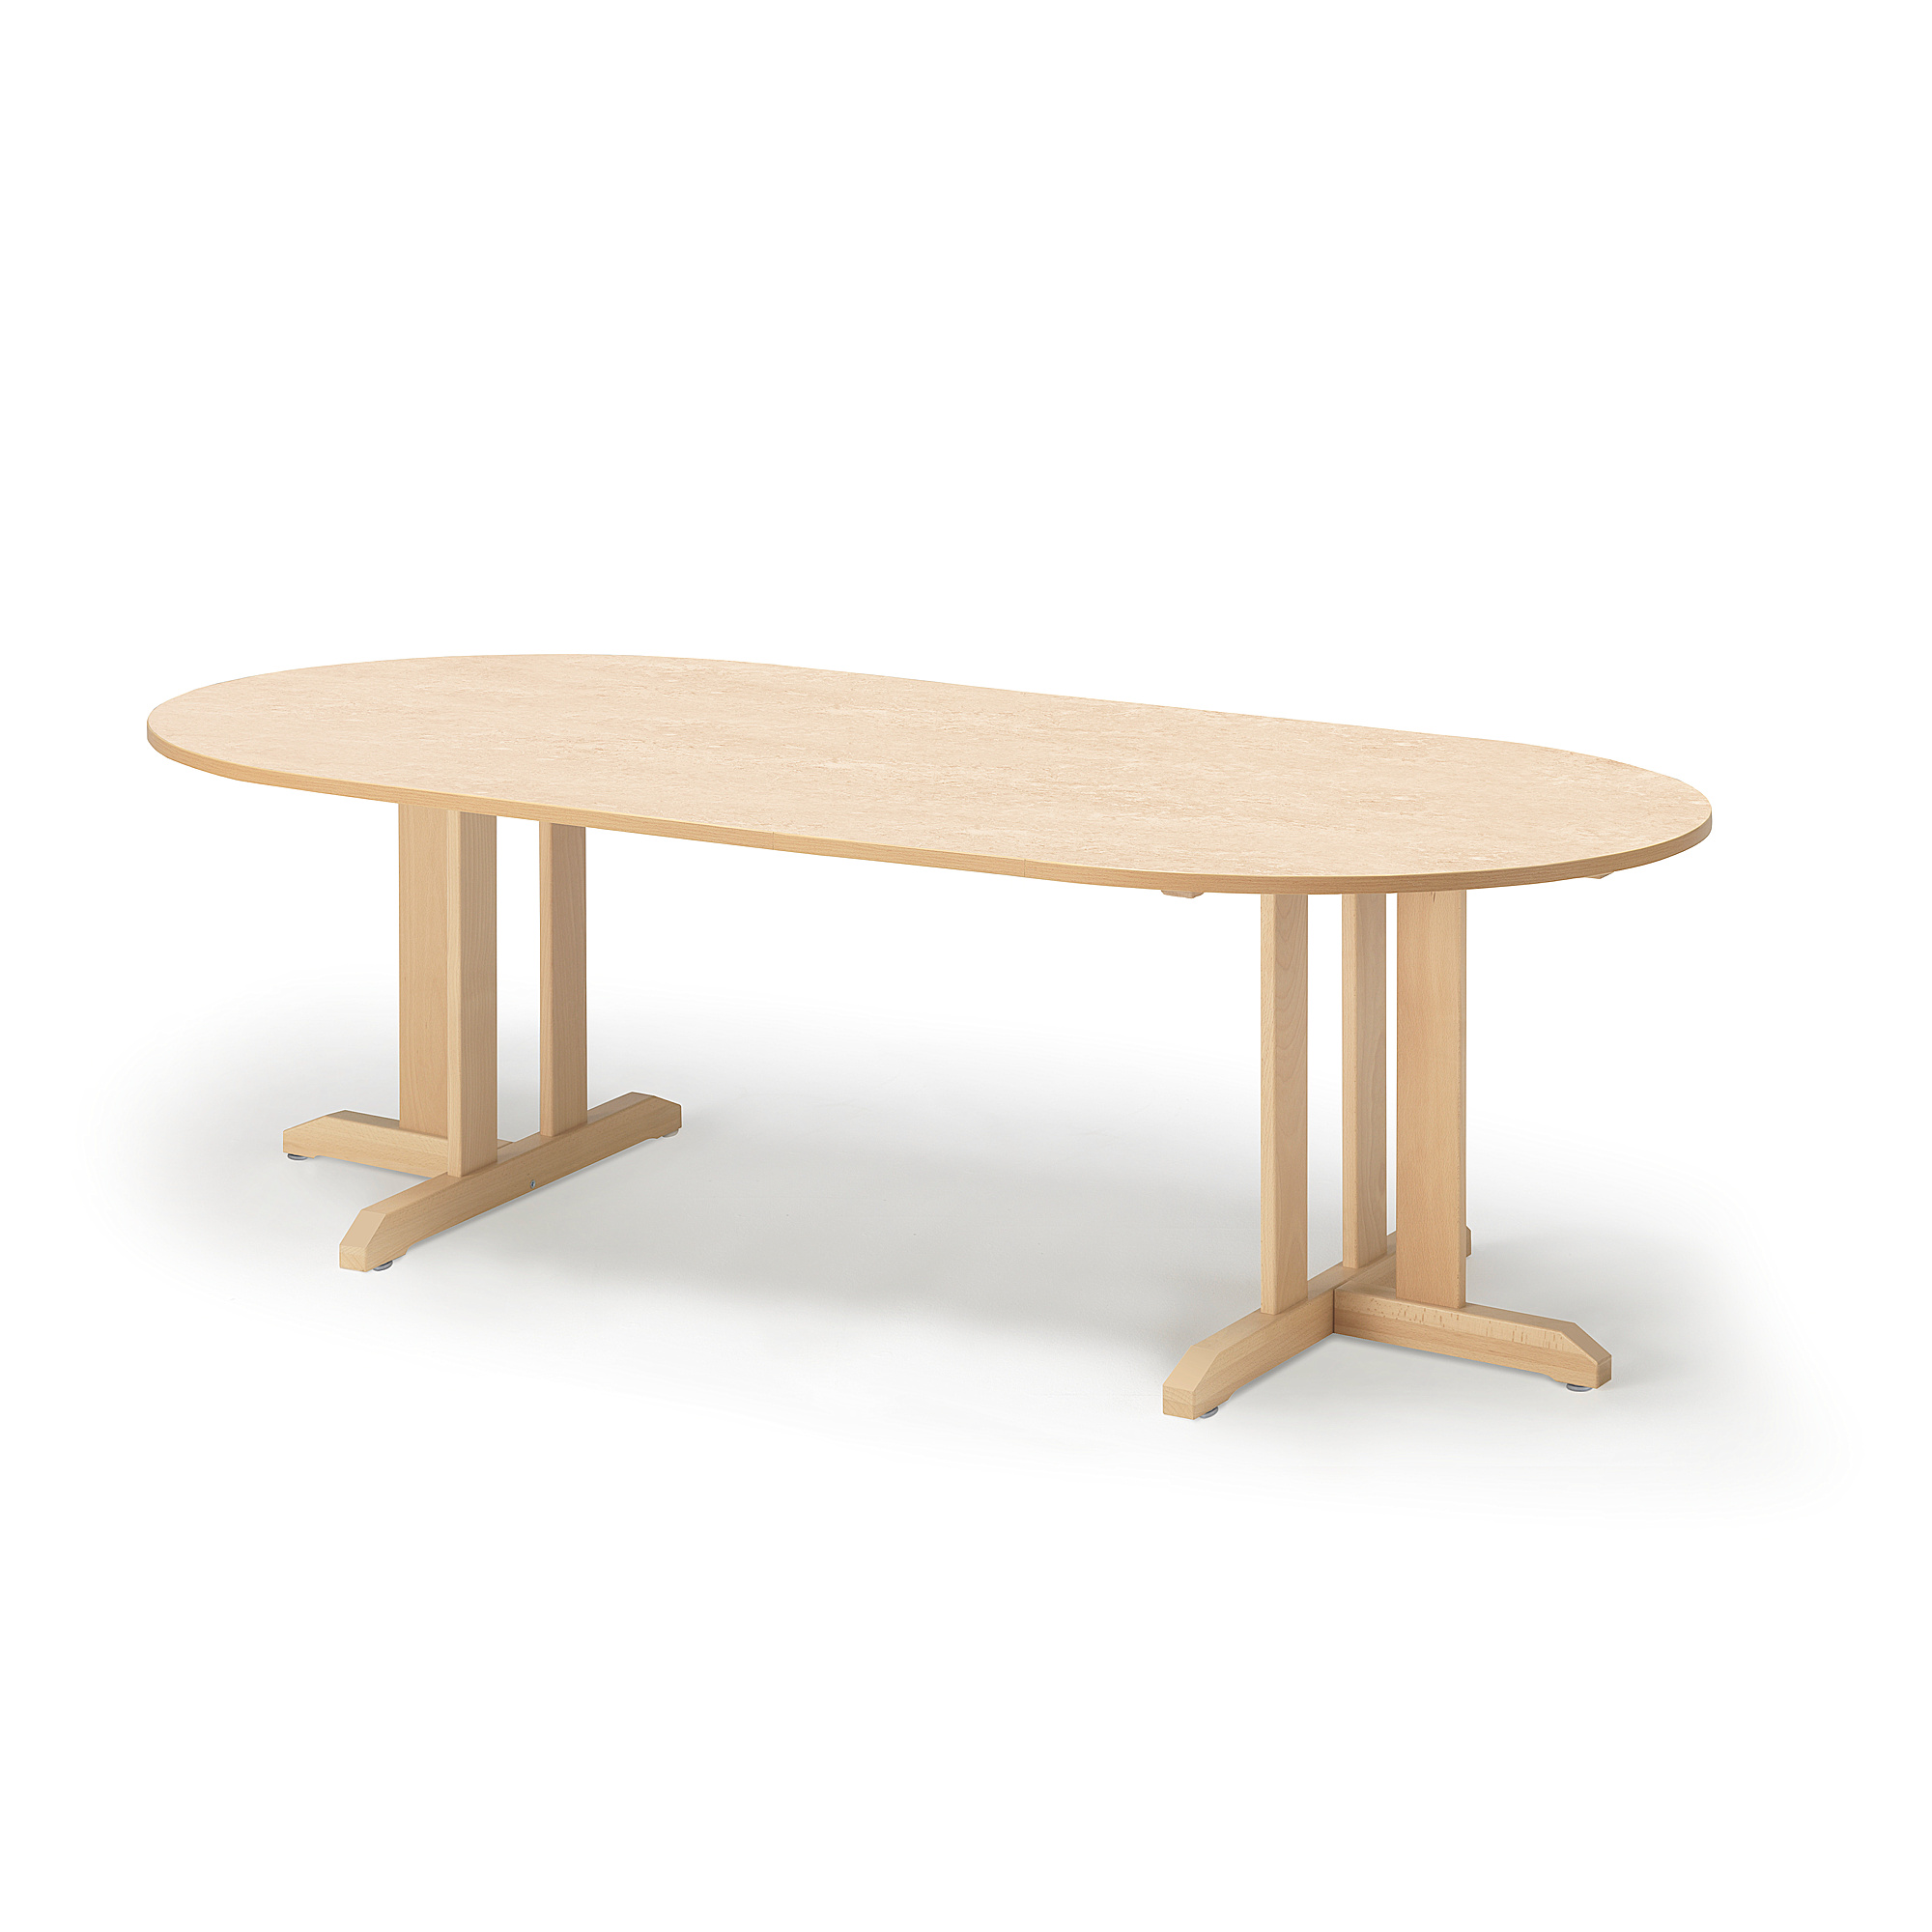 Stůl KUPOL, 2000x800x600 mm, oválný, akustické linoleum, bříza/béžová